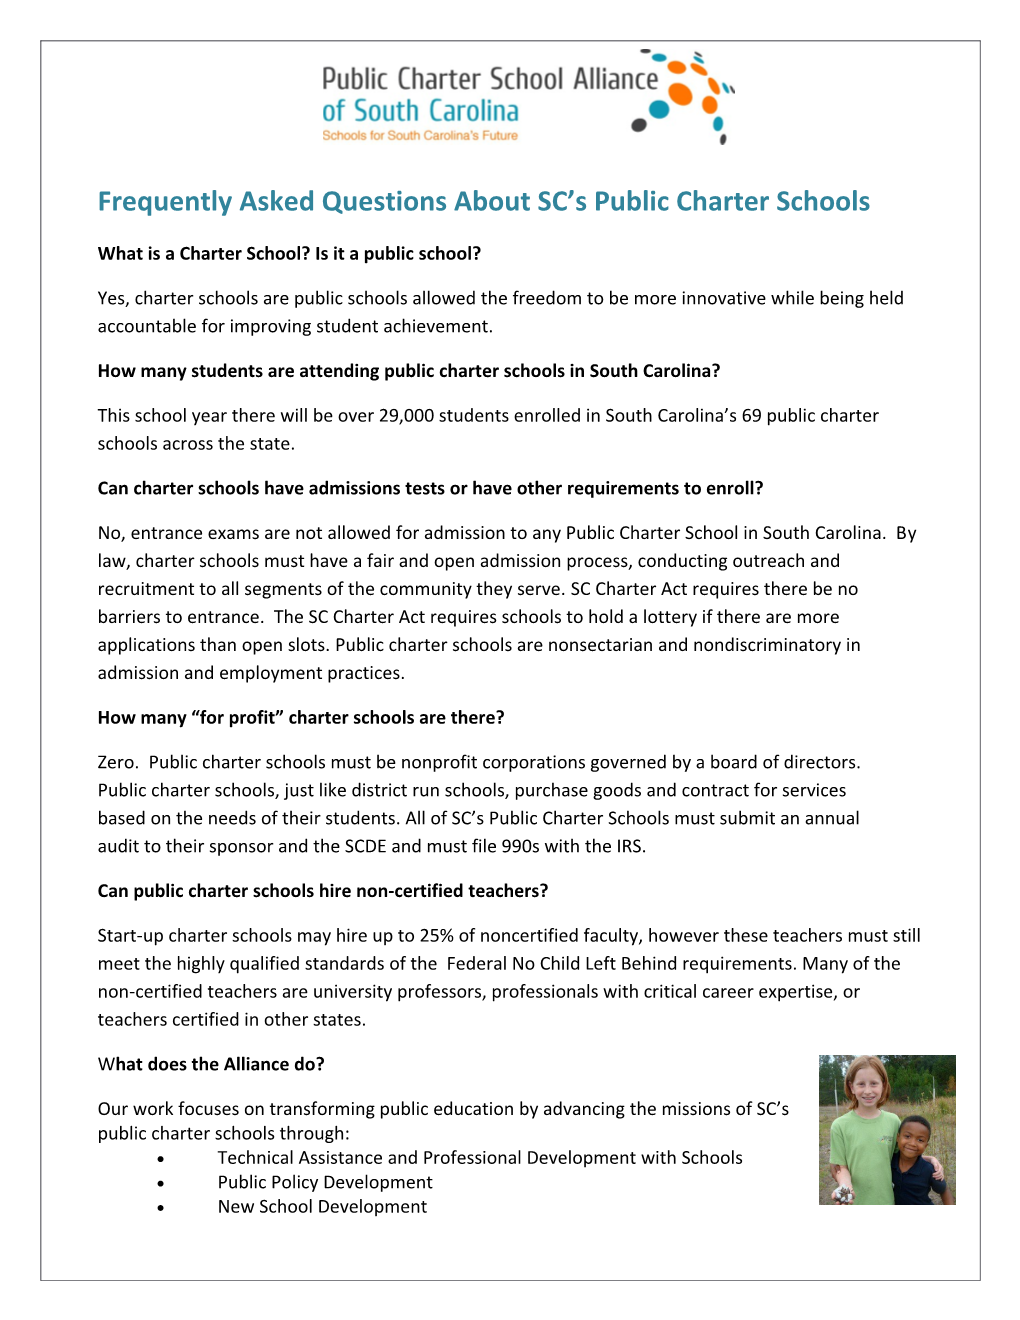 What Is a Charter School? Is It a Public School?